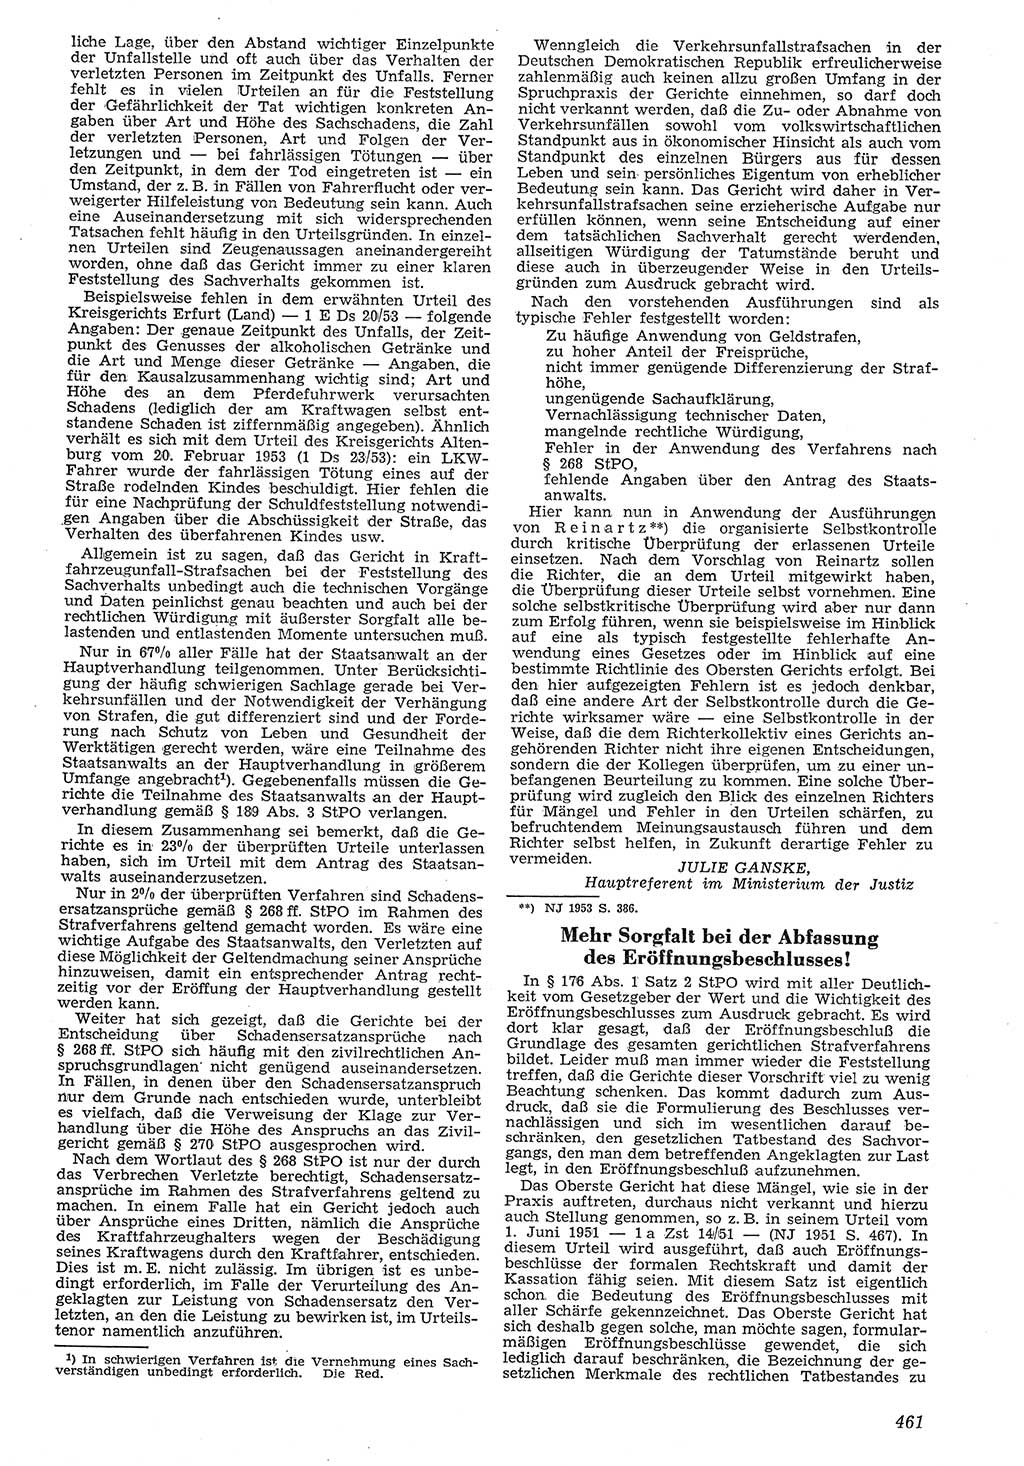 Neue Justiz (NJ), Zeitschrift für Recht und Rechtswissenschaft [Deutsche Demokratische Republik (DDR)], 7. Jahrgang 1953, Seite 461 (NJ DDR 1953, S. 461)